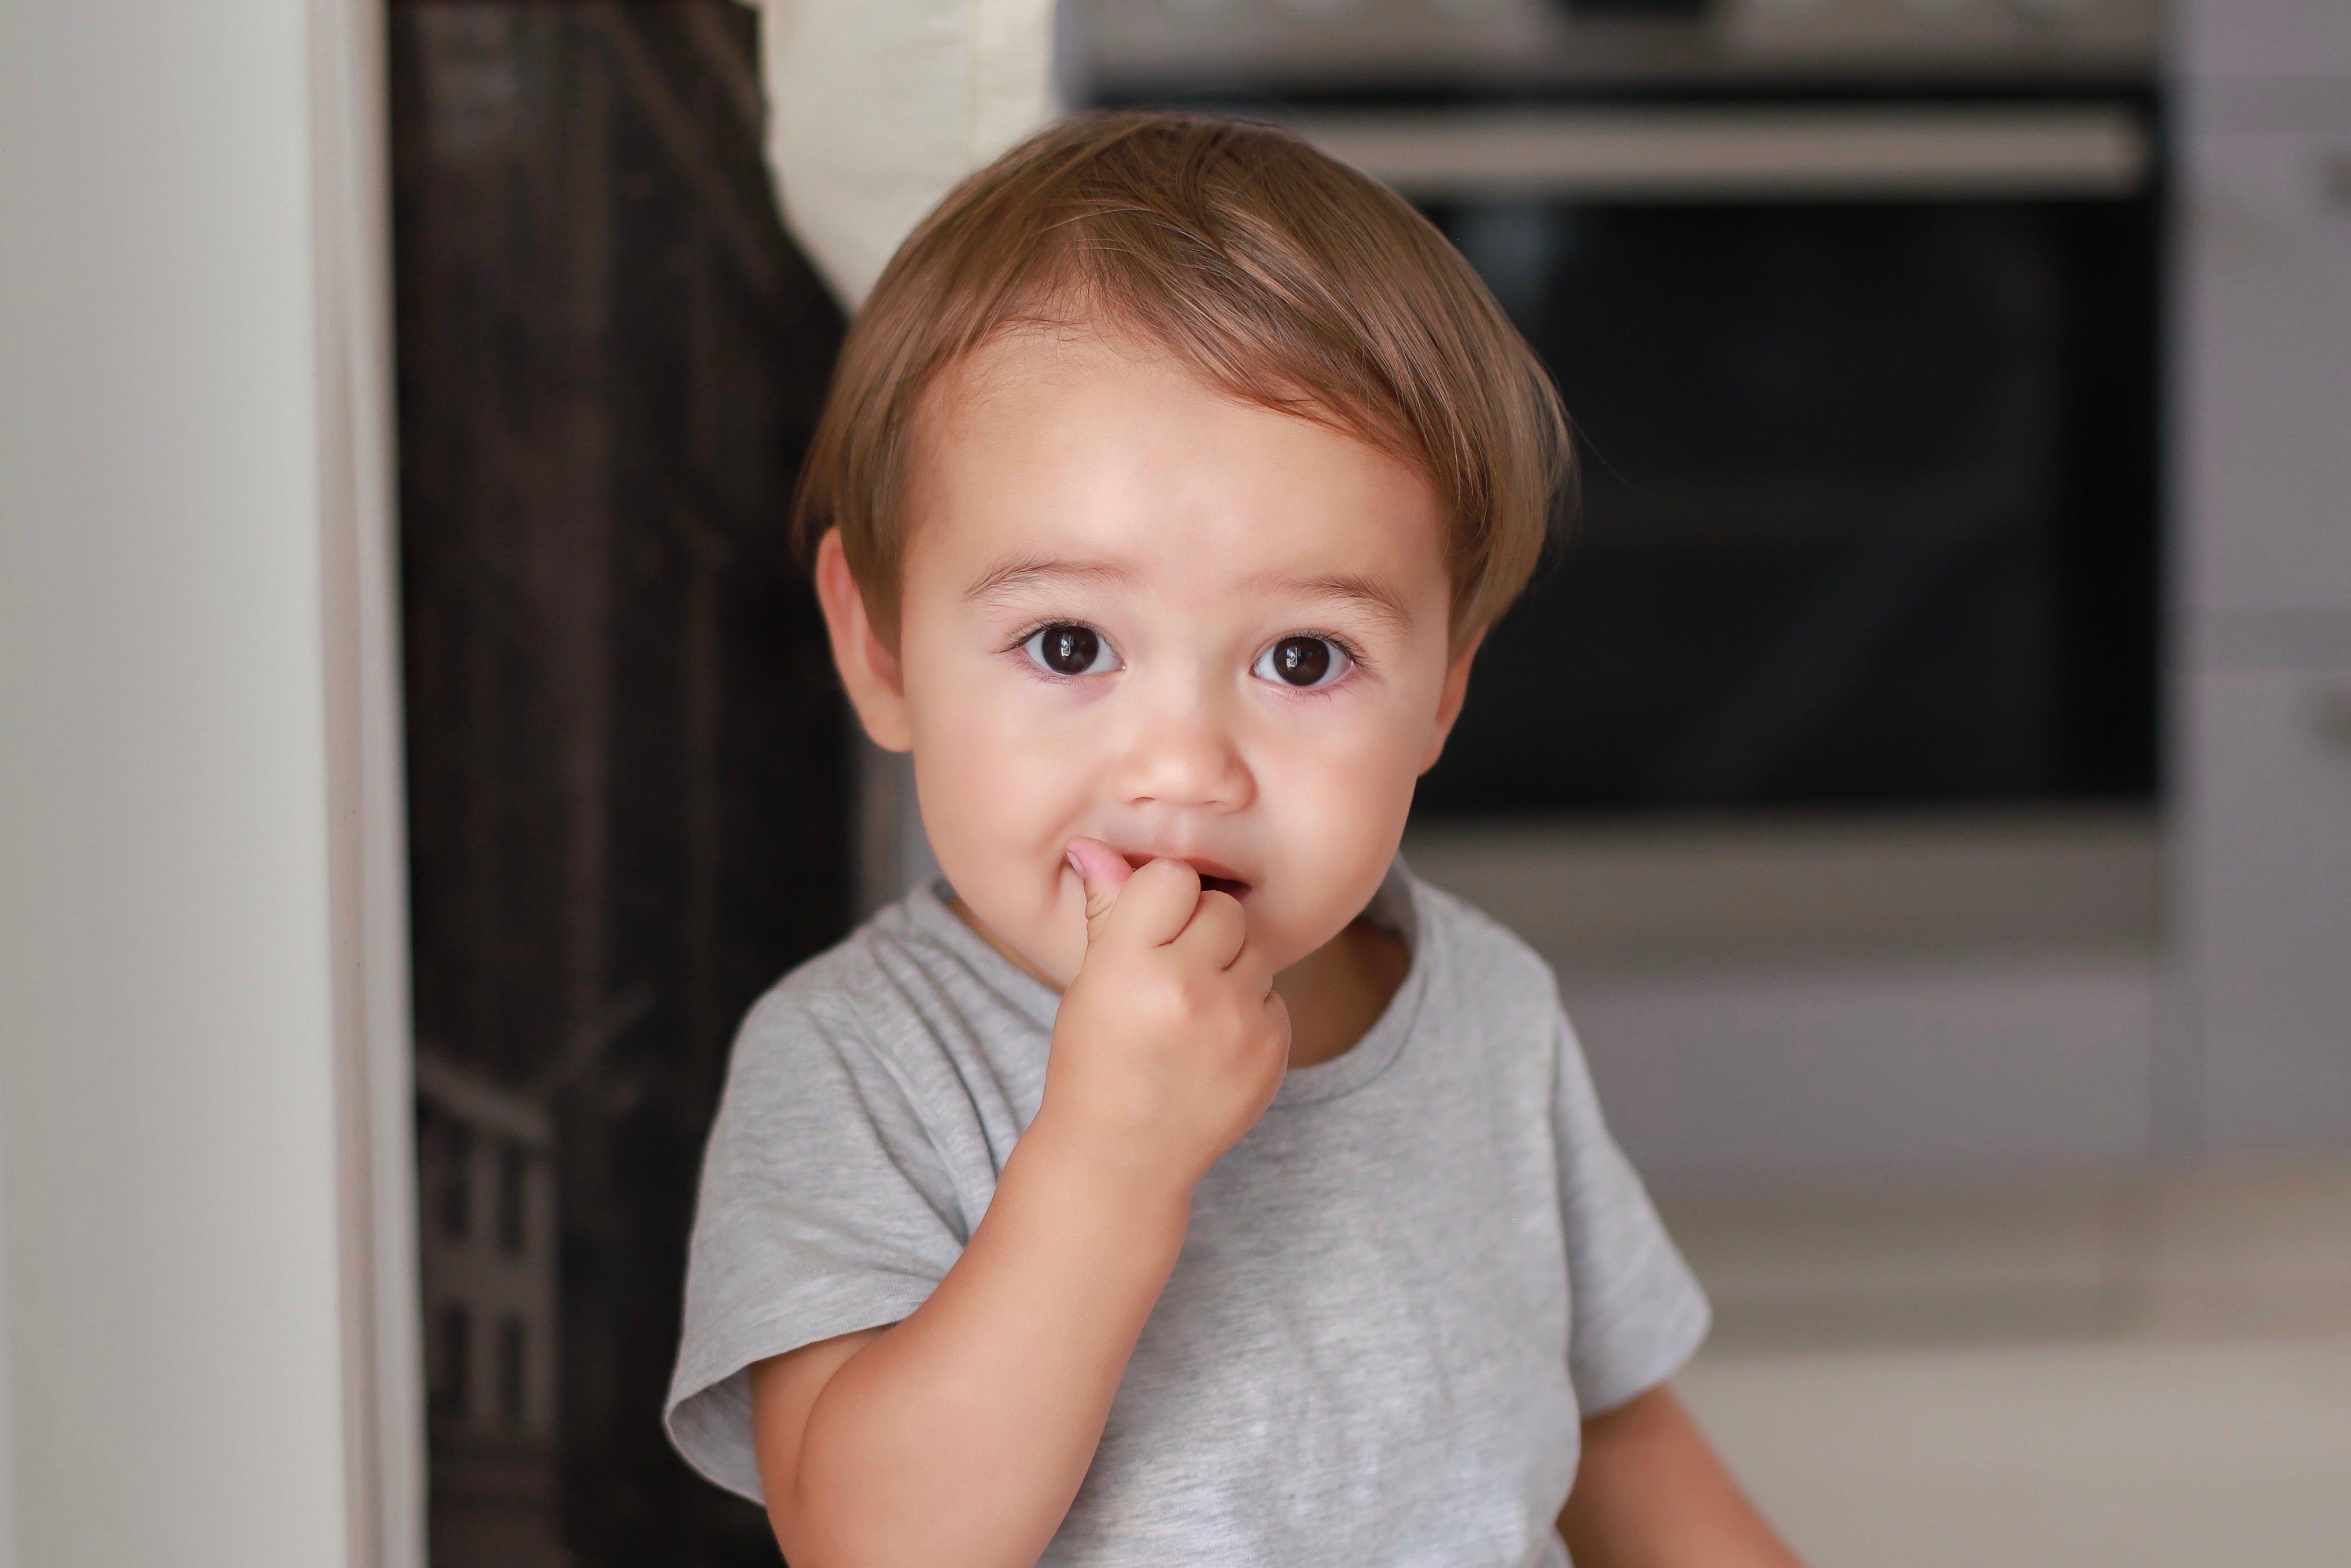 Kopfbild eines kleinen Jungen mit Finger im Mund, der zu Hause einen Snack isst. | Quelle: Shutterstock